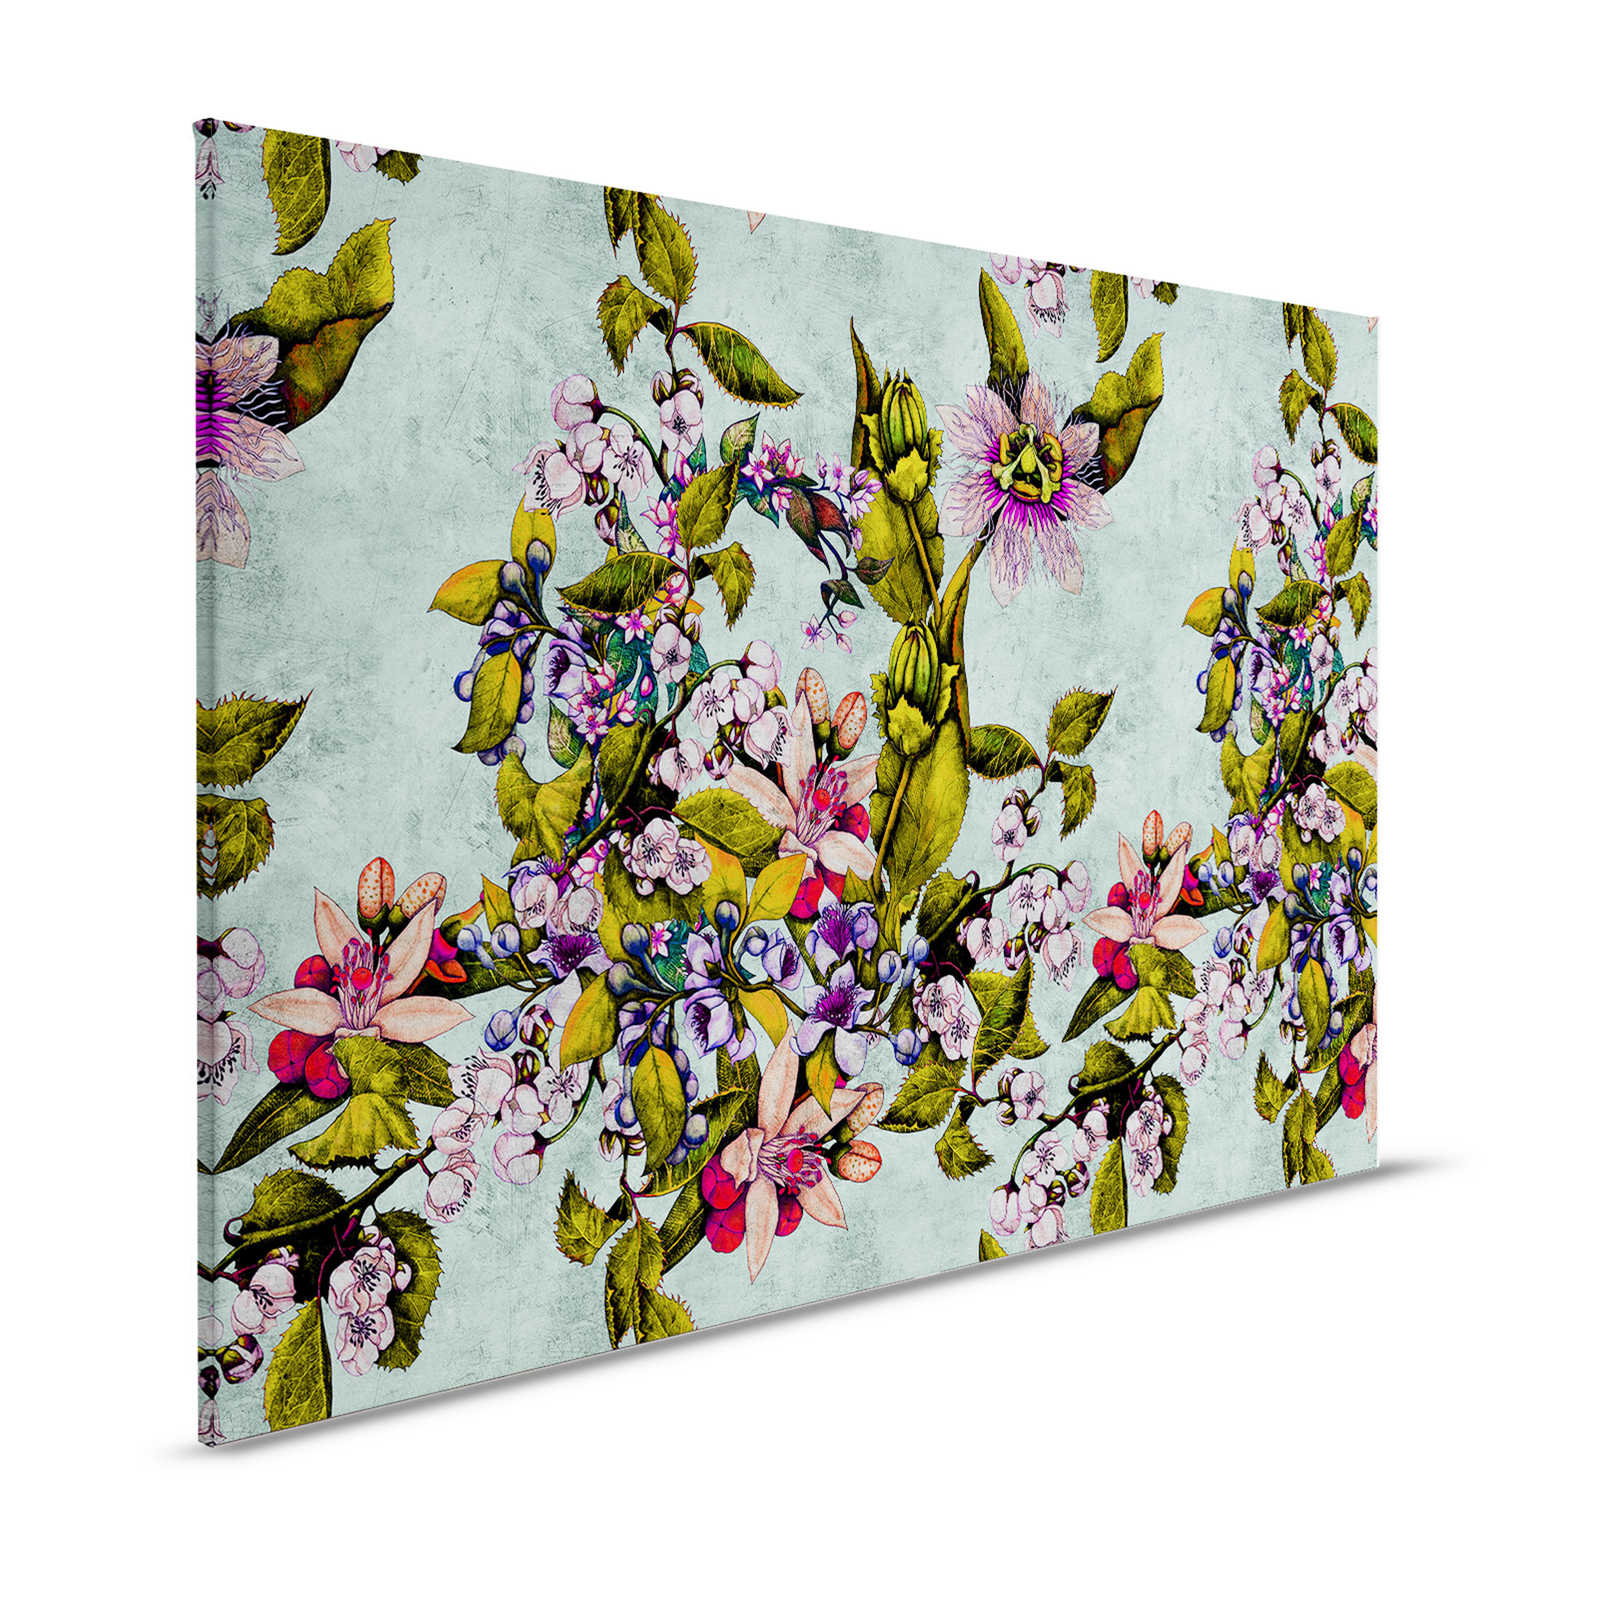 Tropical Passion 2 - Canvas schilderij met bloemen en knoppen - 1.20 m x 0.80 m
